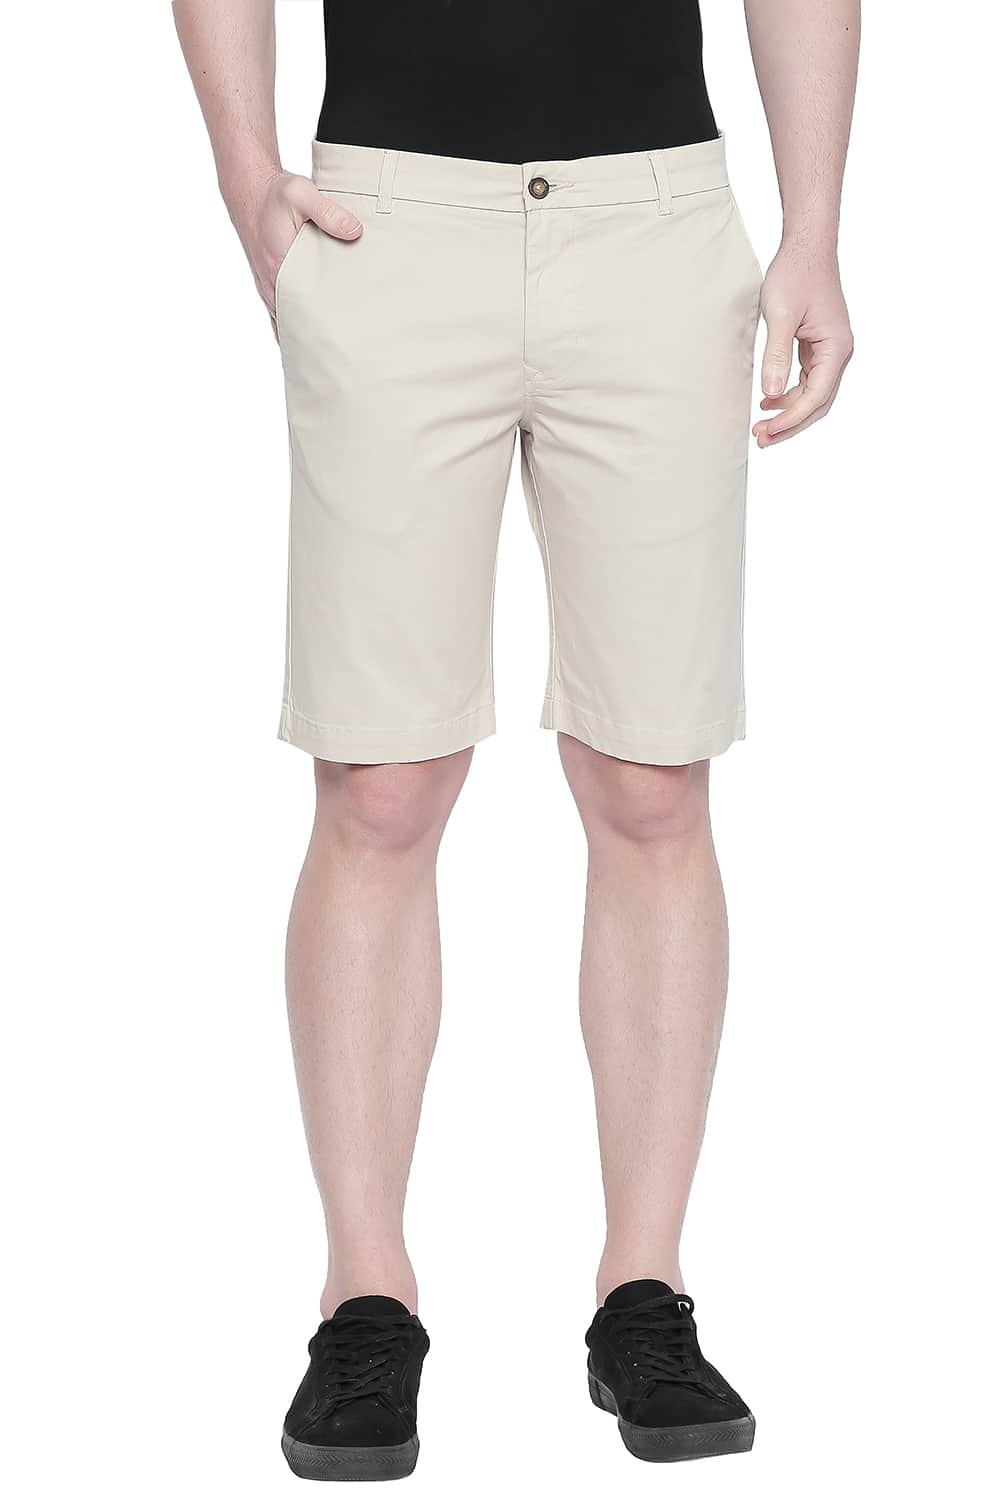 Basics | Basics Comfort Fit Tidal Foam Twill Stretch Shorts